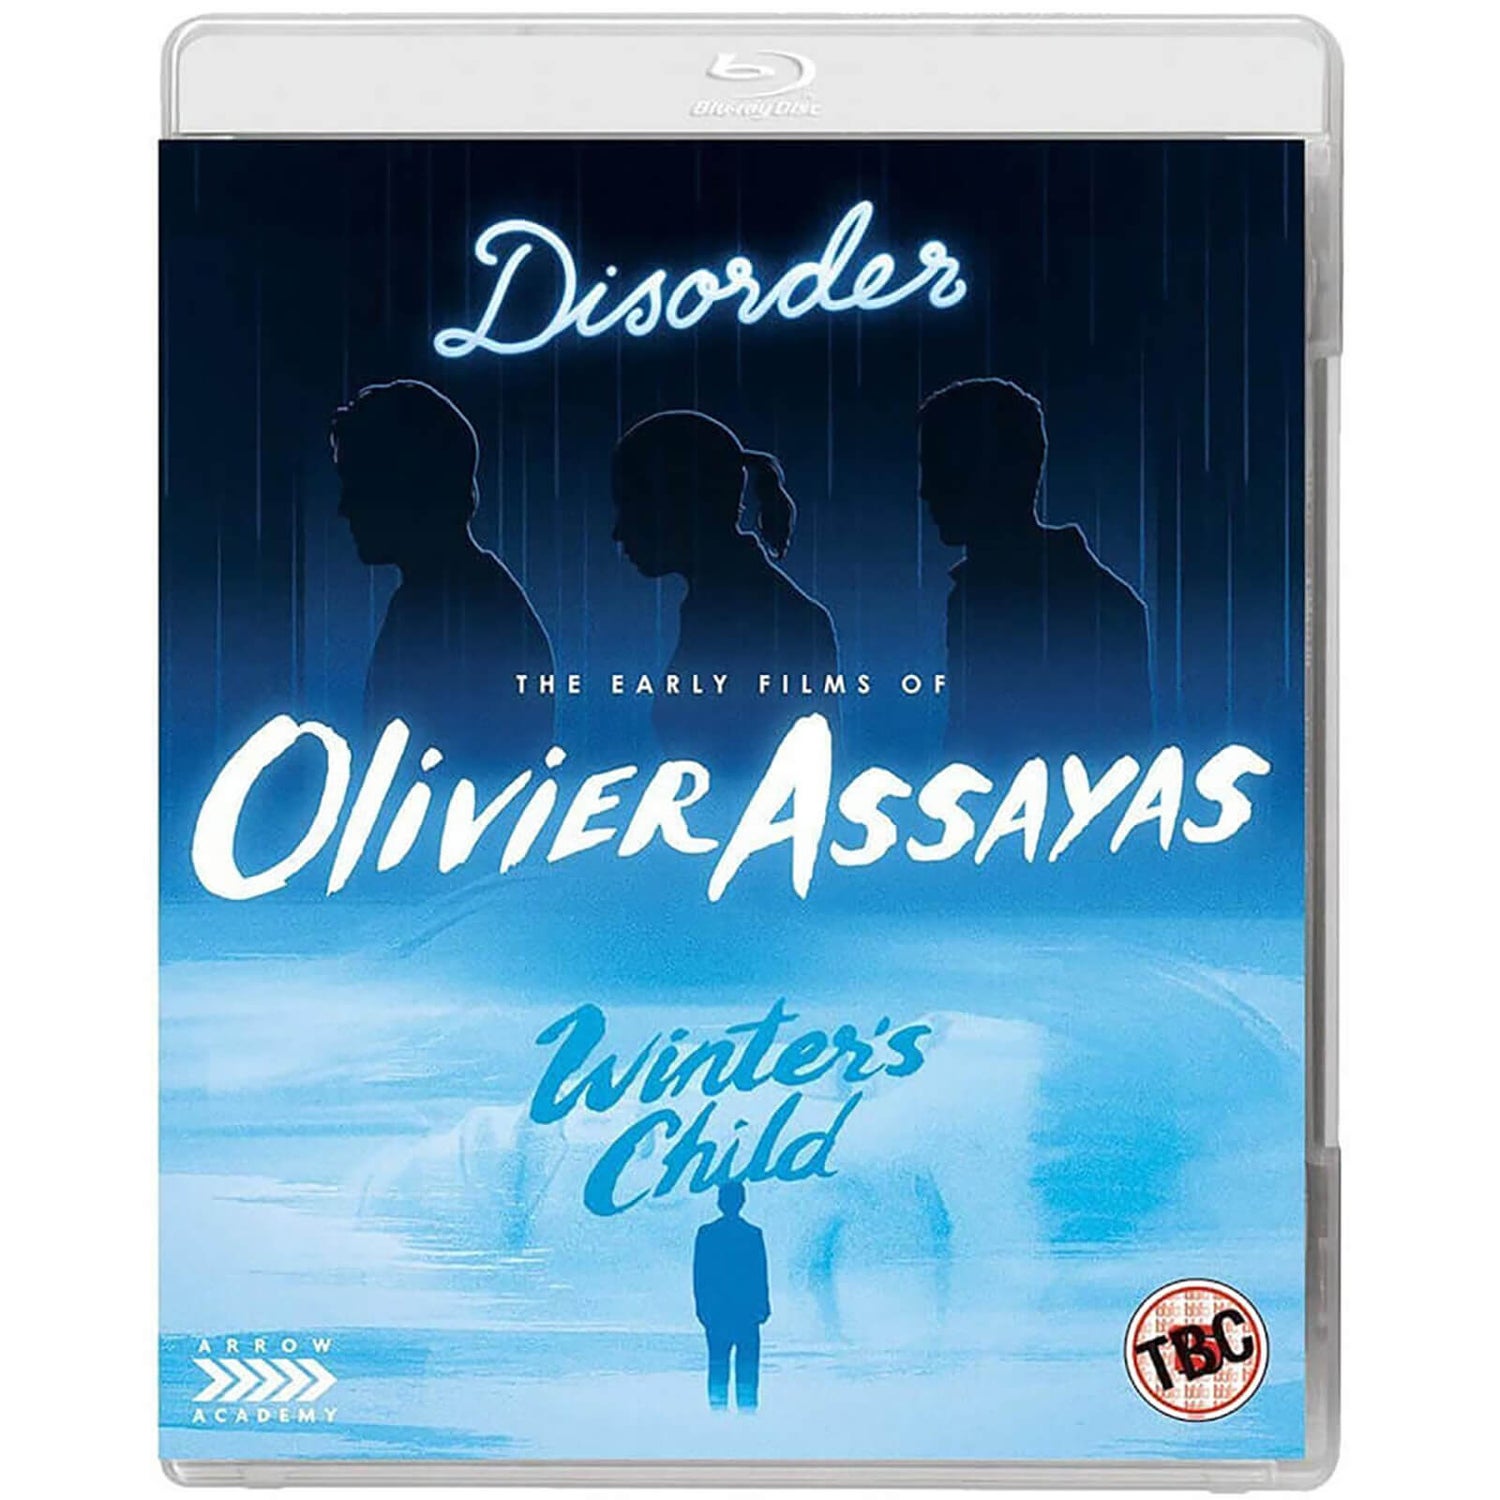 Die frühen Filme von Olivier Assayas (Disorder, Winter's Child)